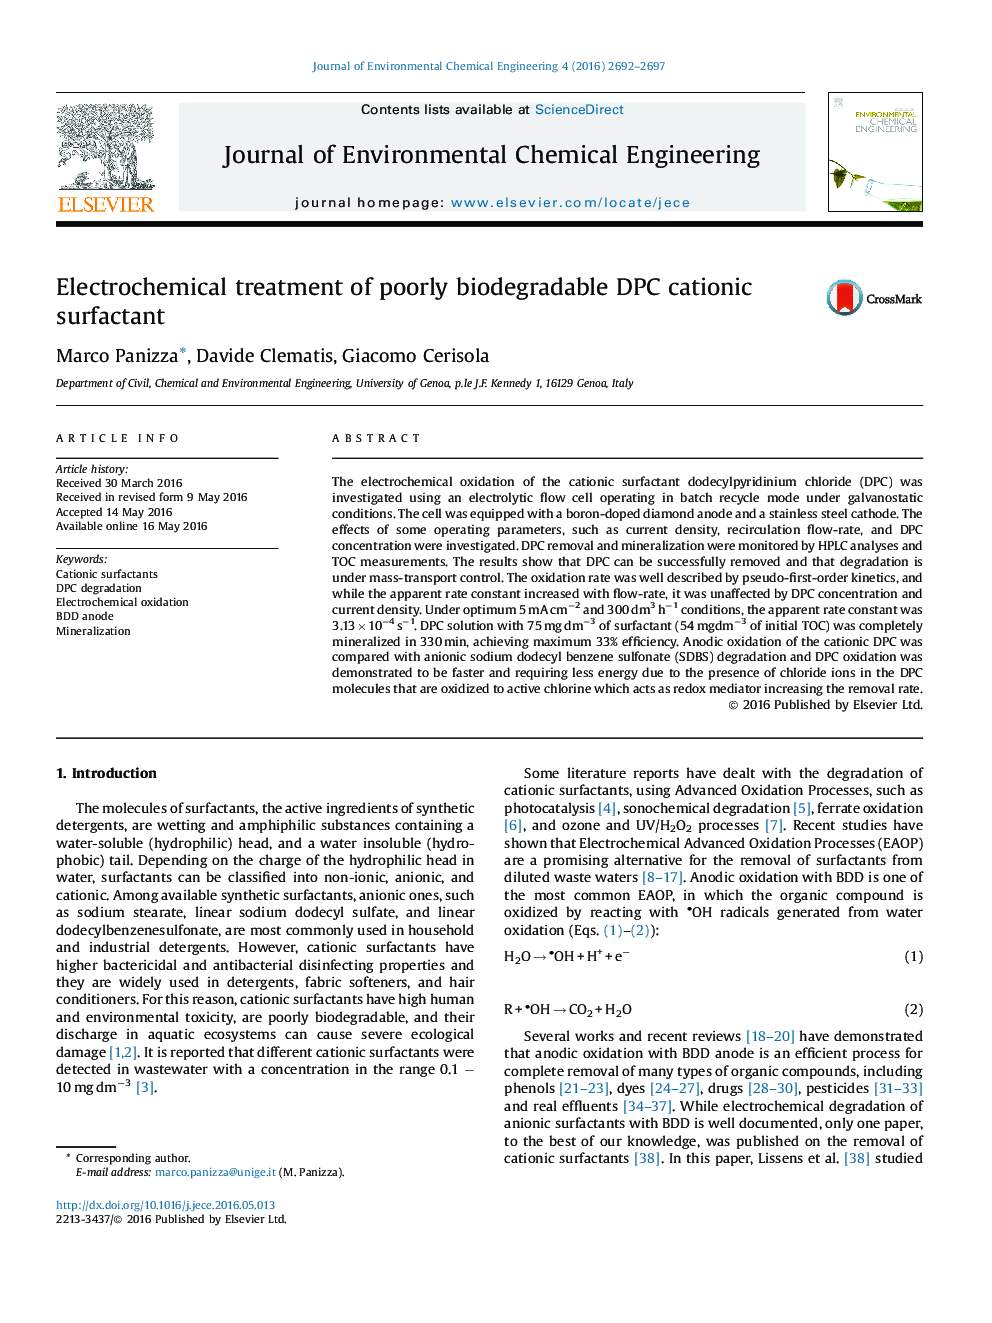 درمان الکتروشیمیایی ضعیف زیست تخریب پذیر DPC سورفاکتانت کاتیونی